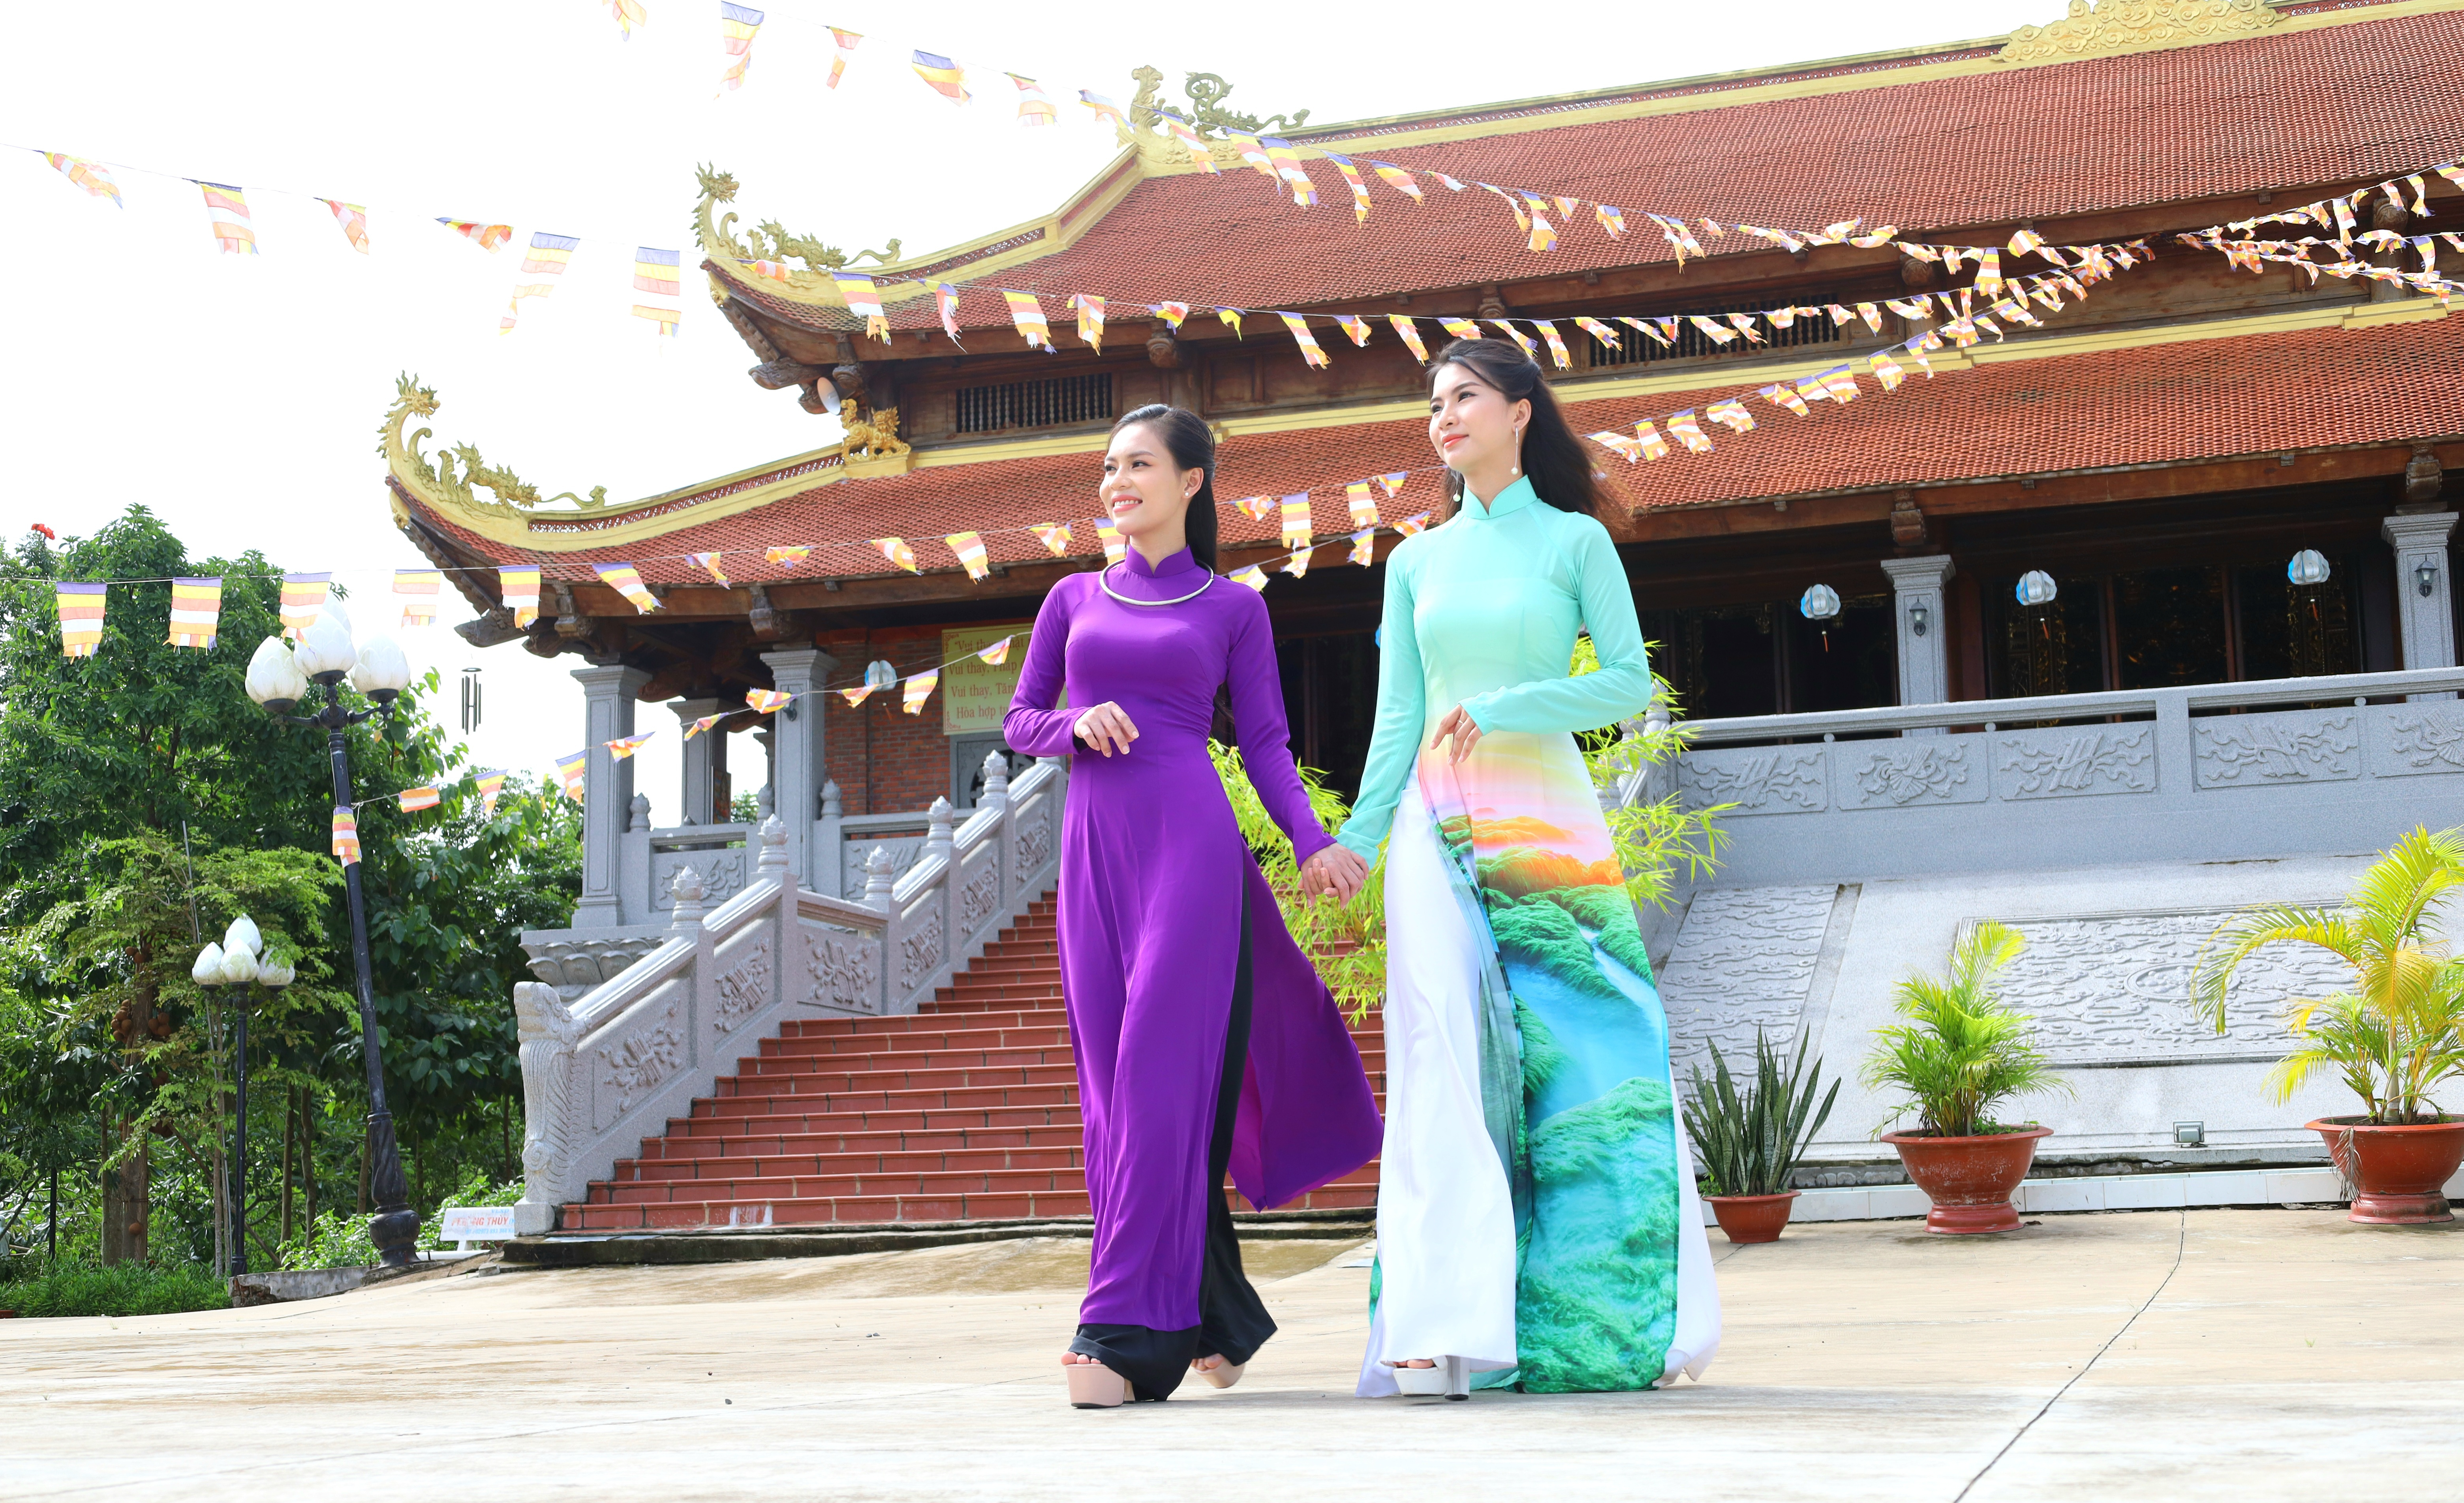 Thiền viện Trúc lâm Hậu Giang là địa điểm du lịch tâm linh đang được rất nhiều du khách tìm đến.